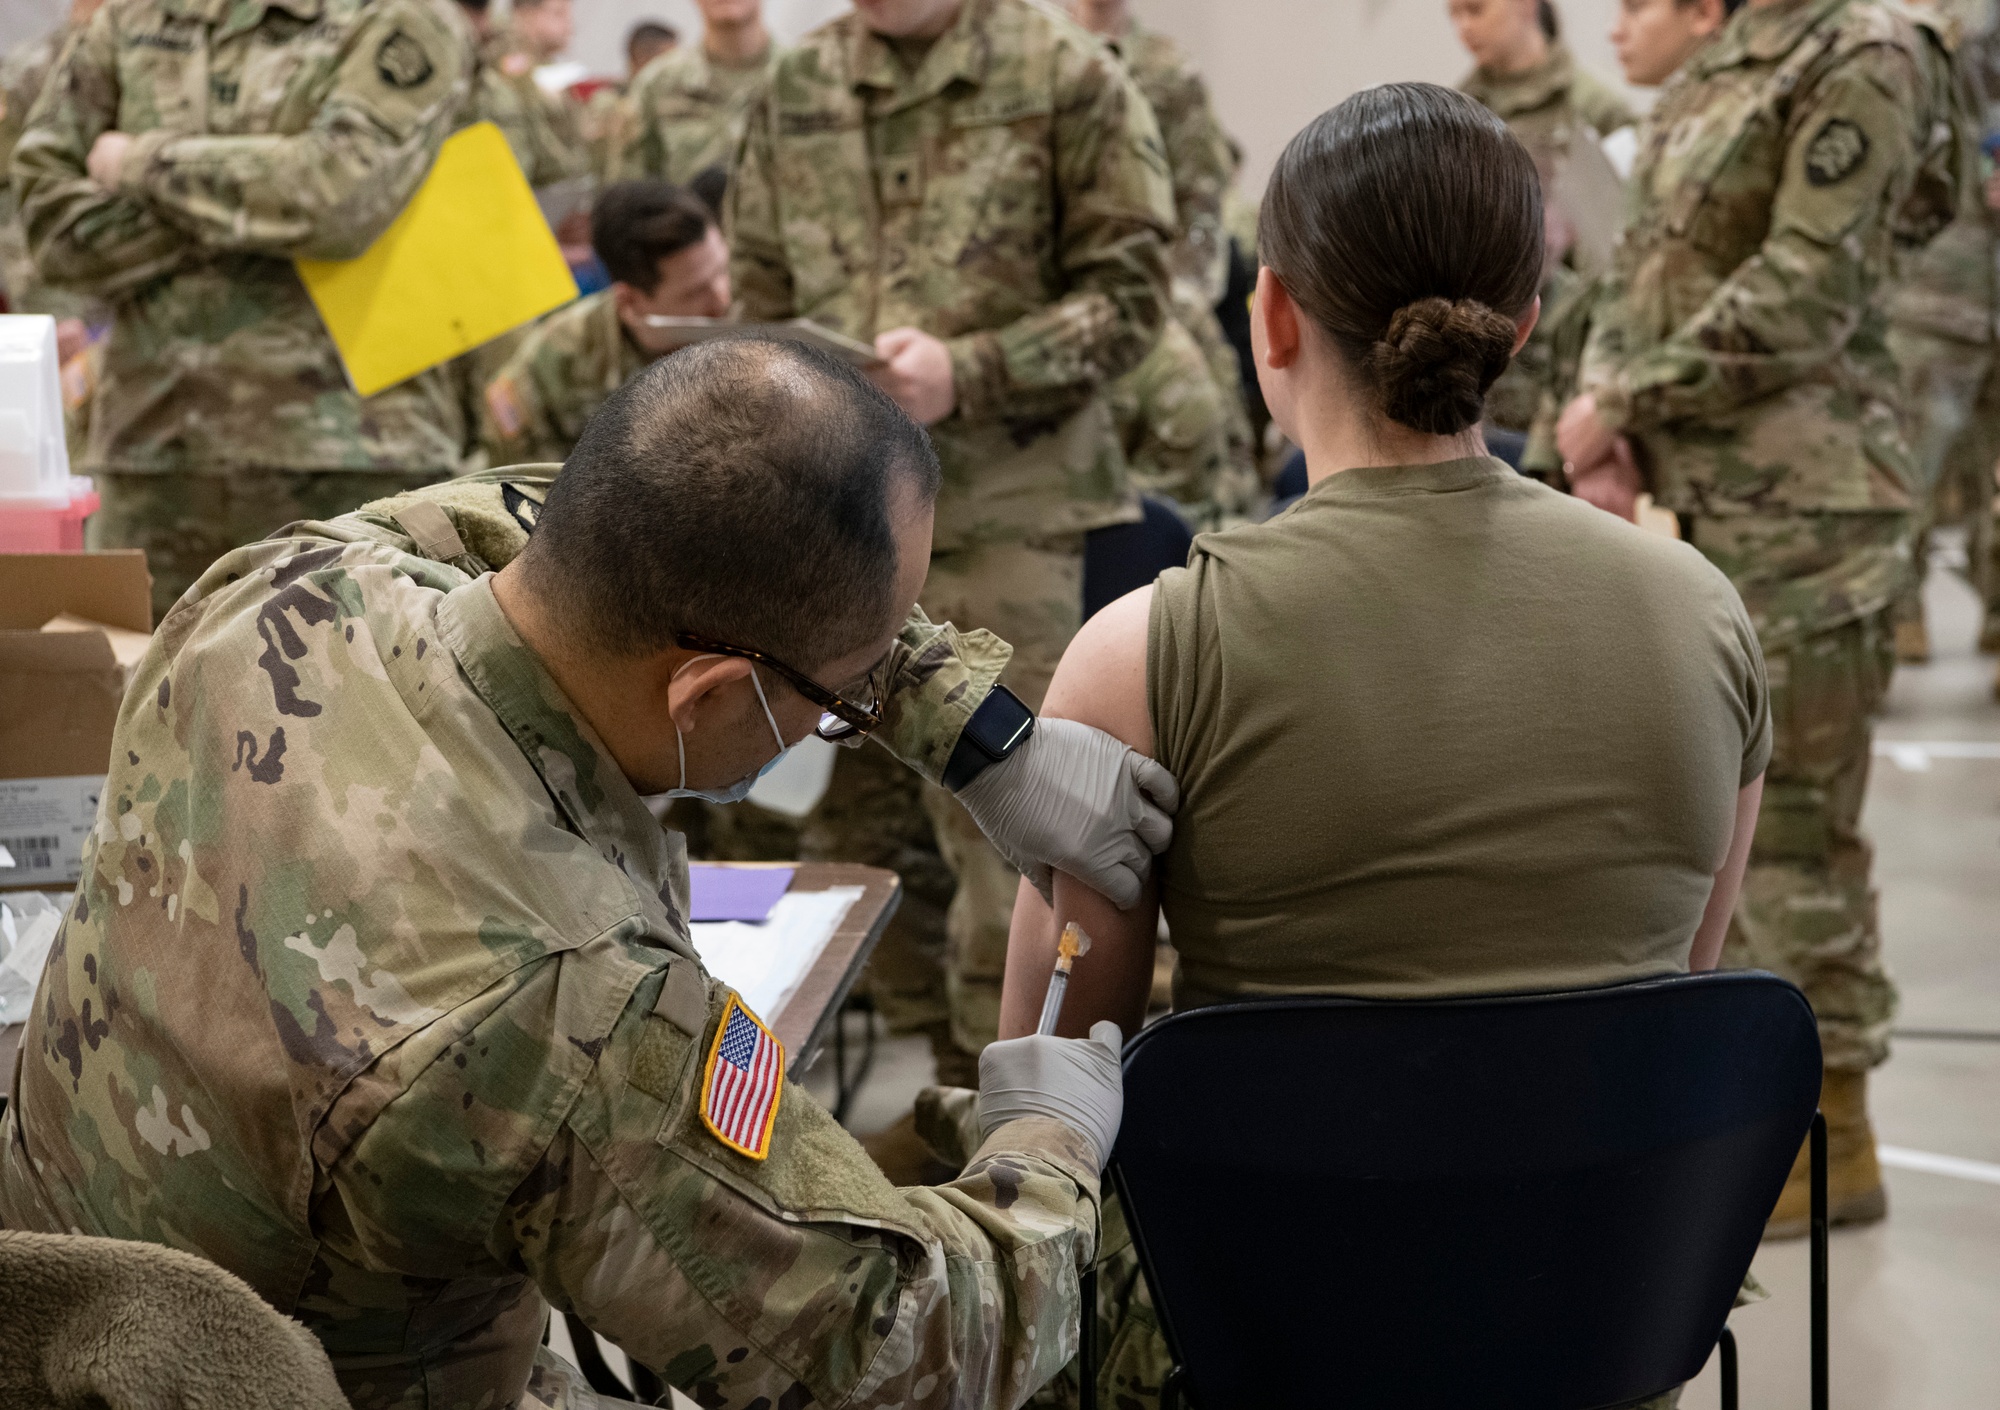 DVIDS - Images - Oregon National Guard Doctors support vital